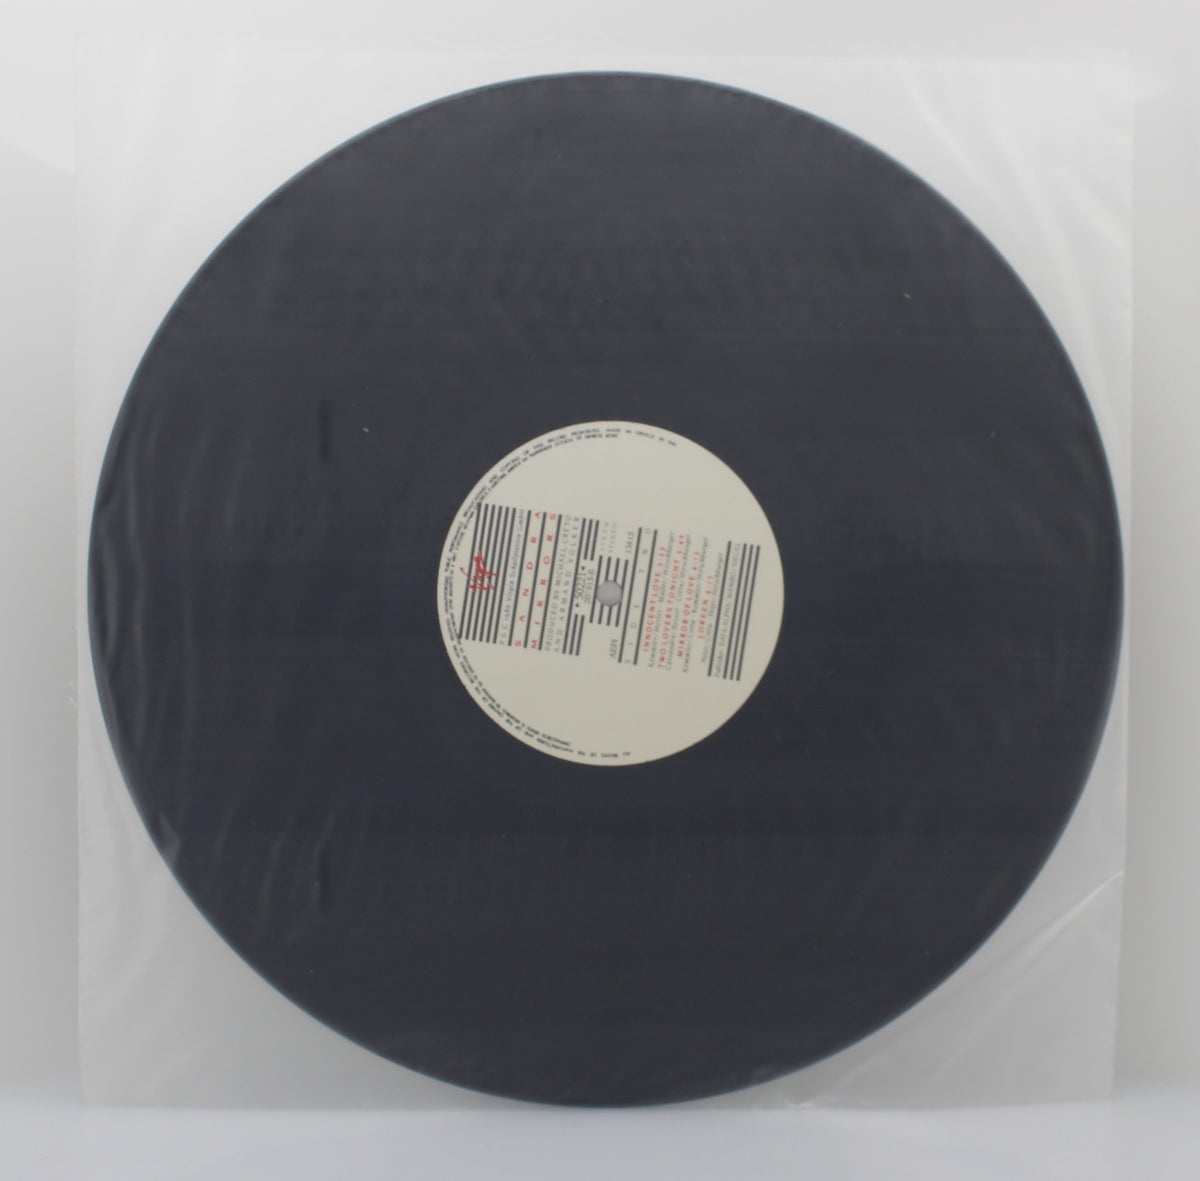 Sandra – Mirrors, Vinyl, LP, Album 33⅓, VG+/NM